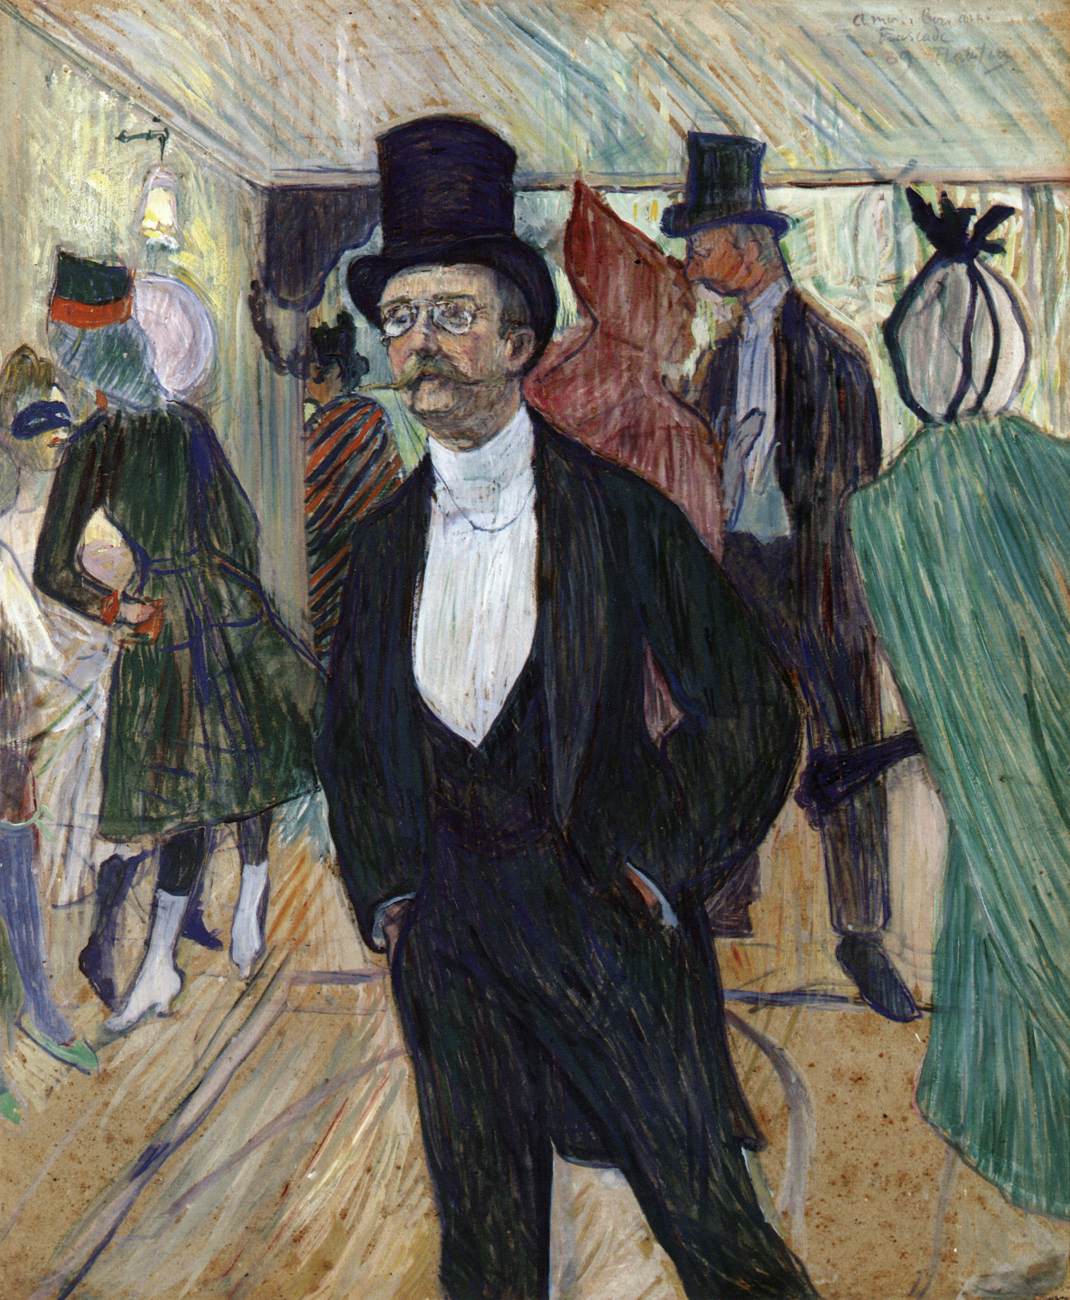 Henri+de+Toulouse+Lautrec-1864-1901 (91).jpg